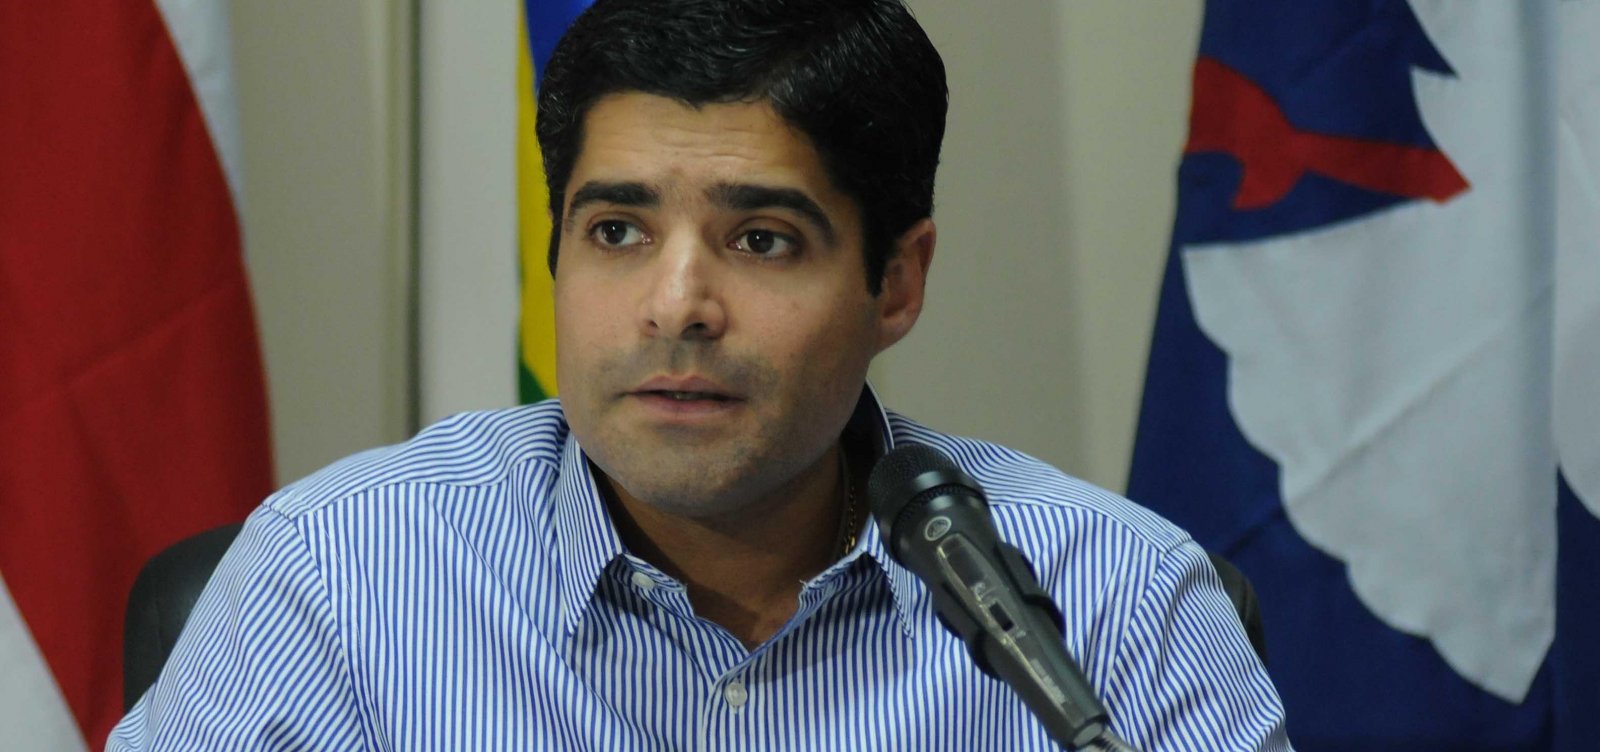 Neto quer 'acordo' com dirigentes partidários em prol da reforma da Previdência, diz coluna 